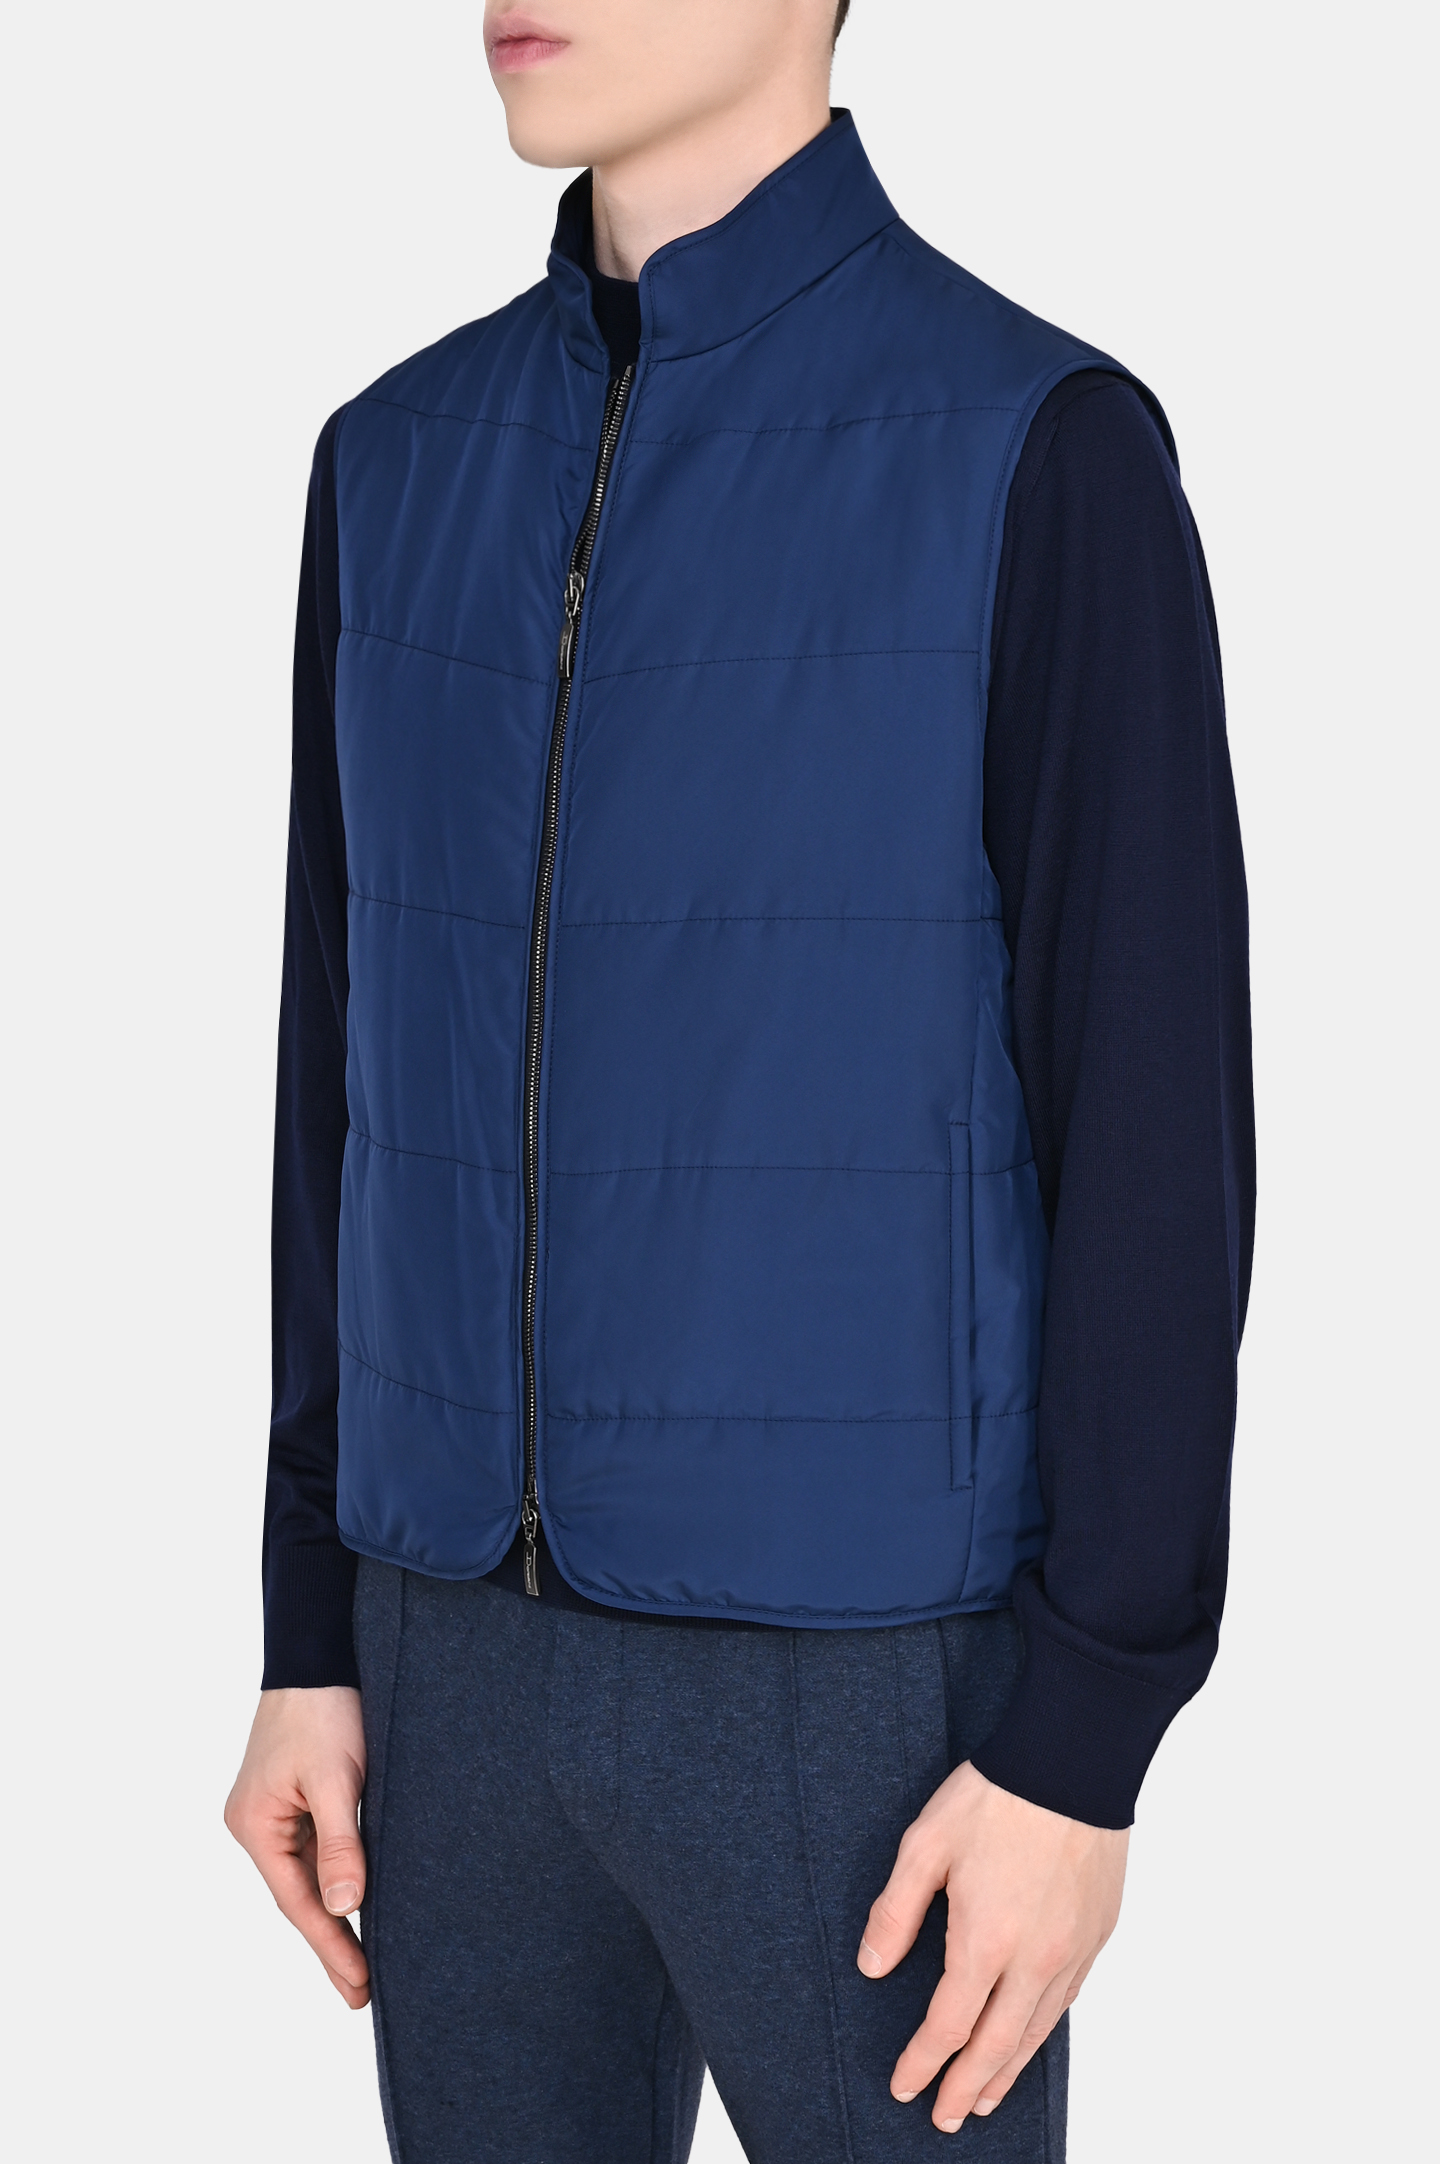 Куртка DORIANI CASHMERE A361/GILNY, цвет: Синий, Мужской